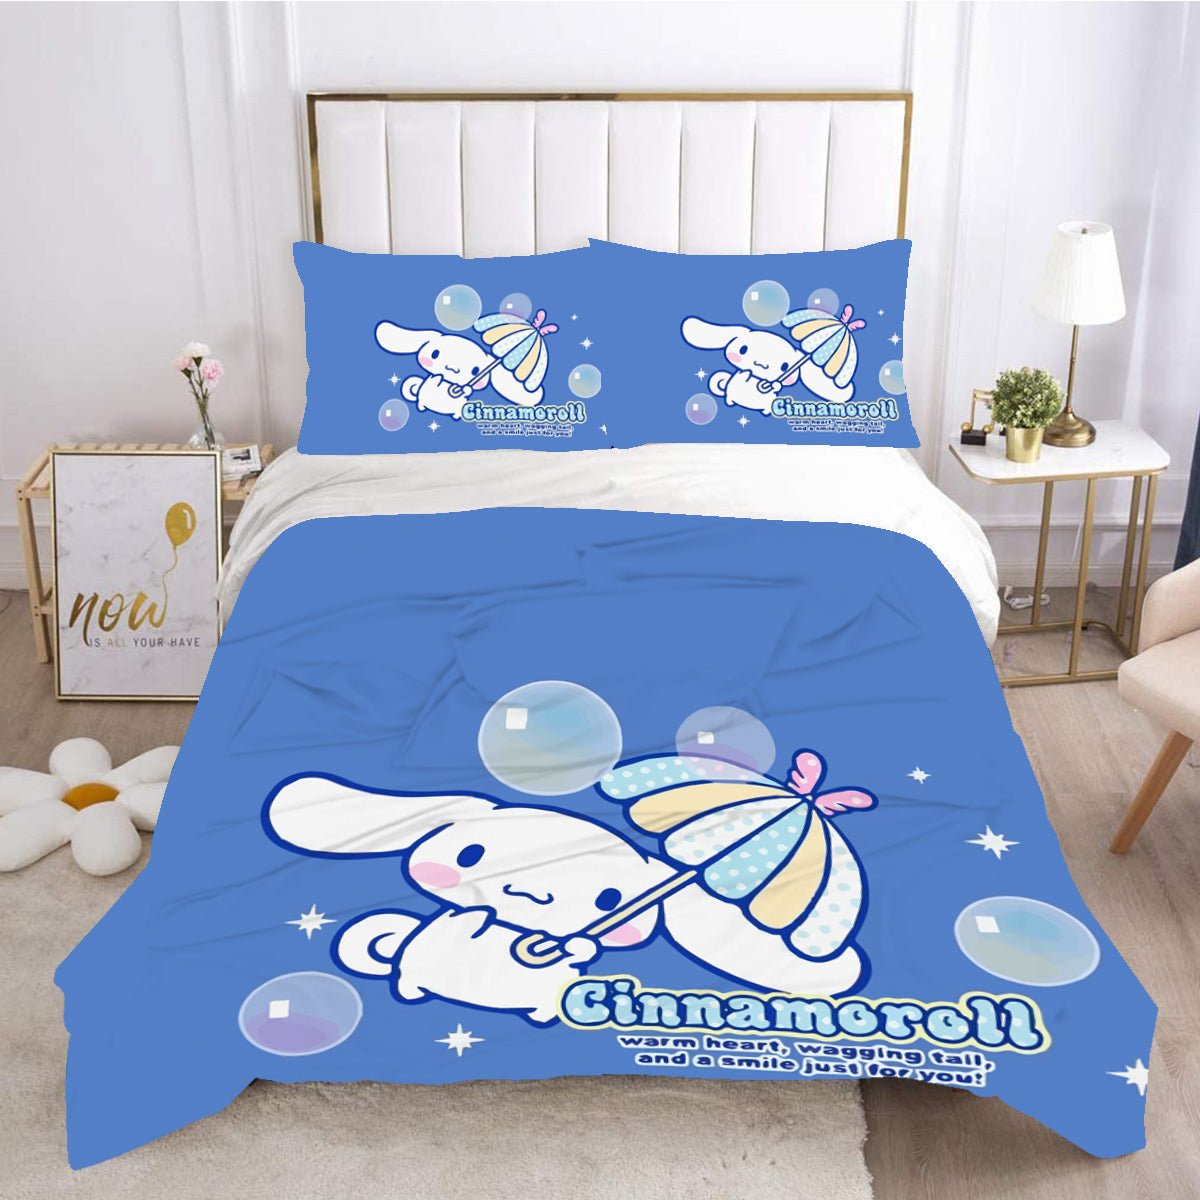 Sanrio Hello Kitty Bedding Set Cute Cotton Four Piece Double Queen Size  Pillowcase Bed Linens Girl Dorm Bedclothes Home Textile